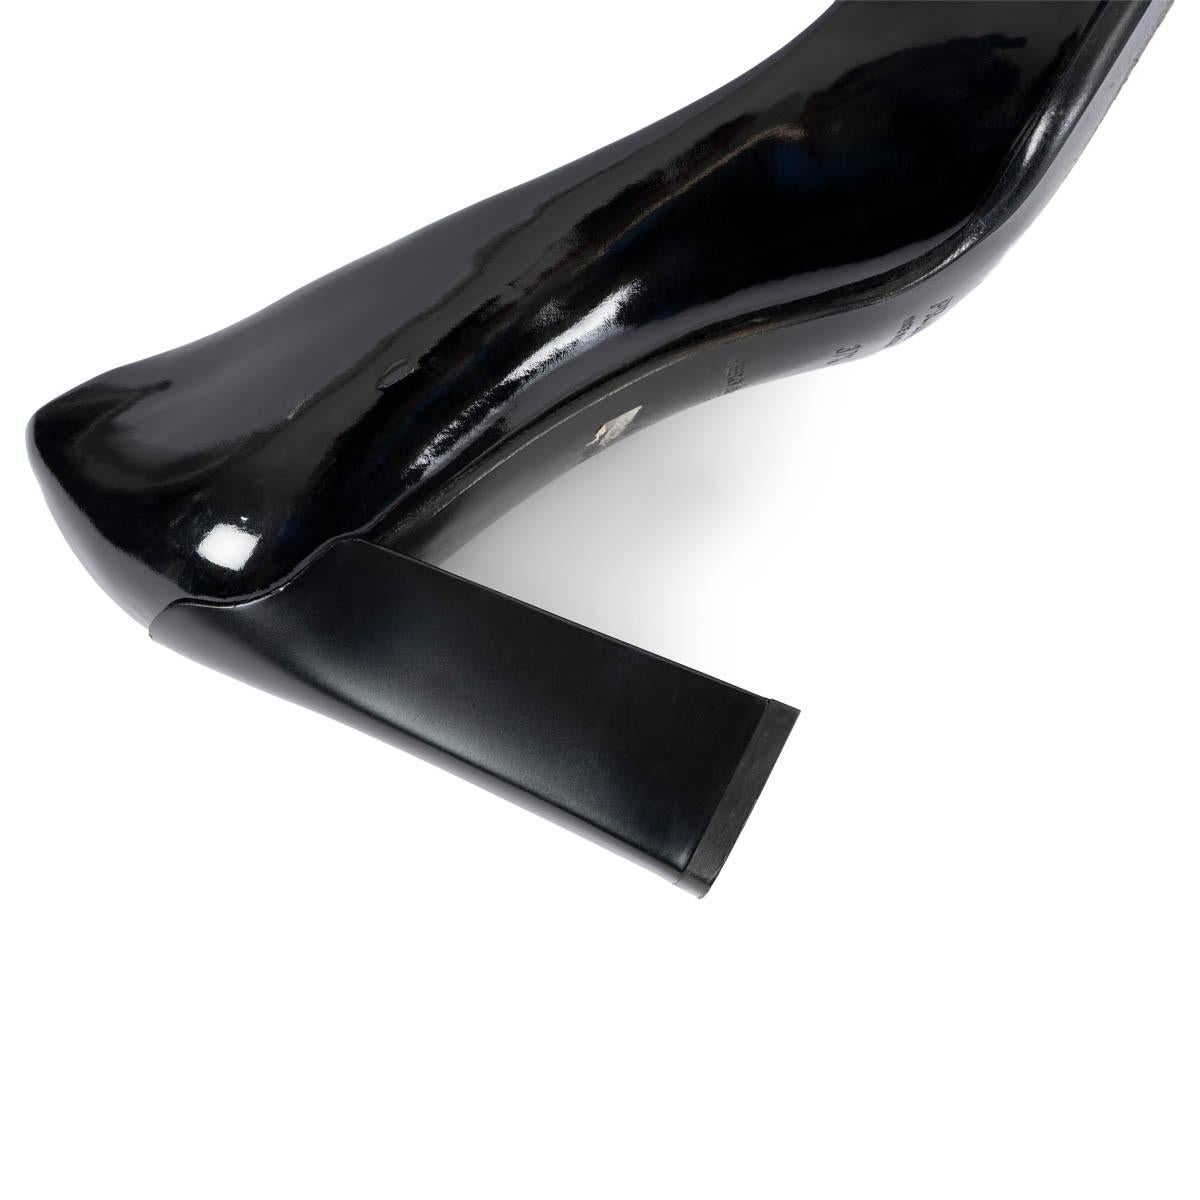 PRADA black patent leather VINTAGE Pumps Shoes 37.5 3